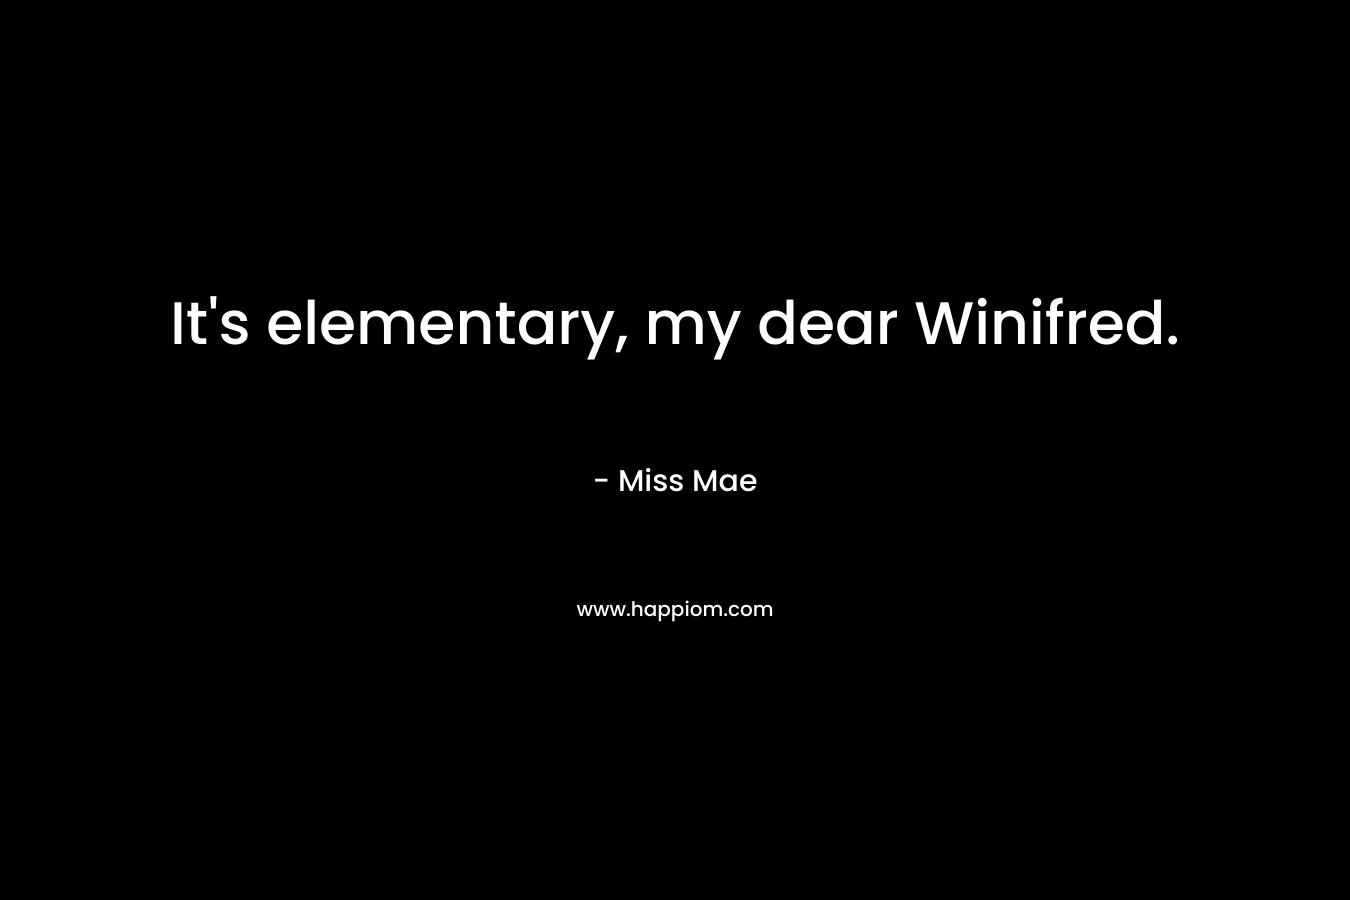 It's elementary, my dear Winifred.